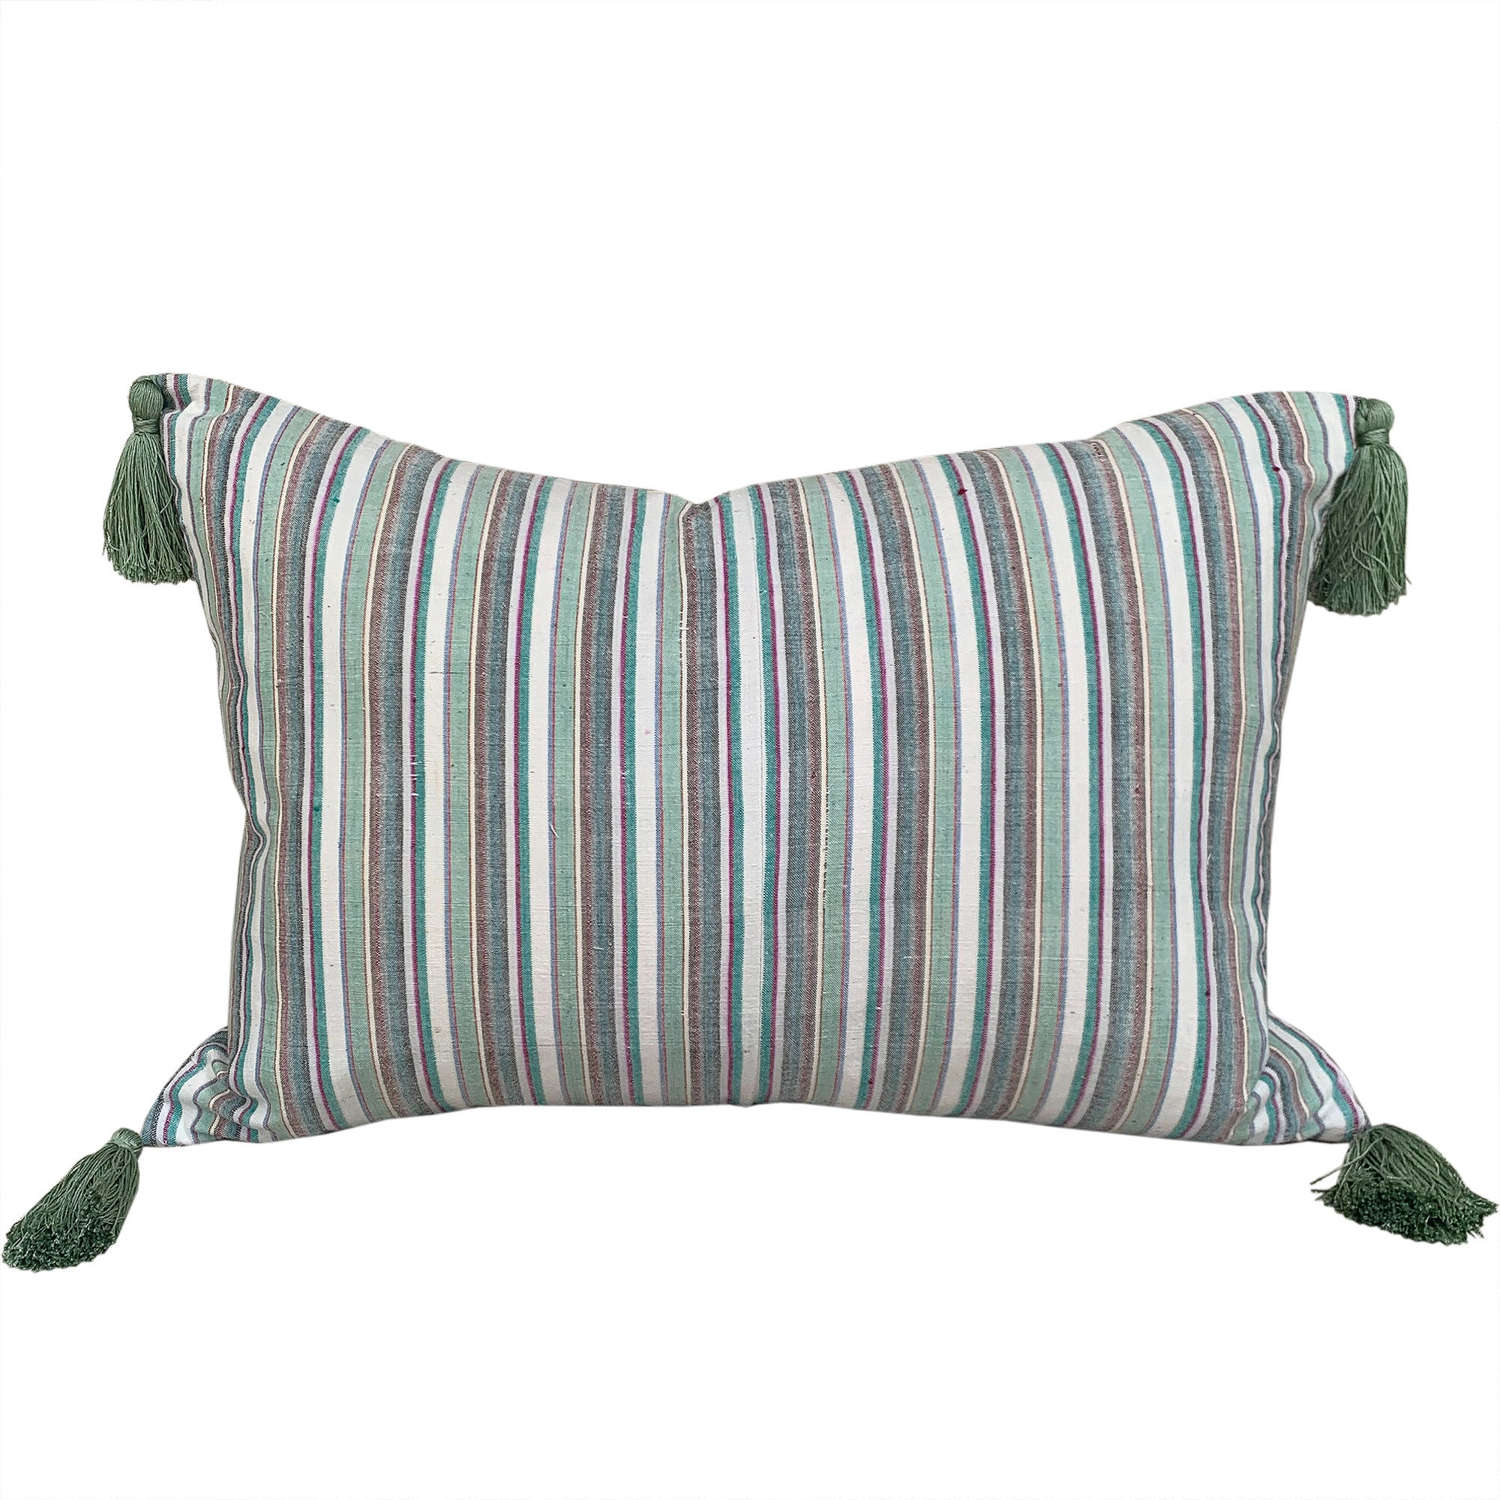 Songjiang Cushions, Green Stripe